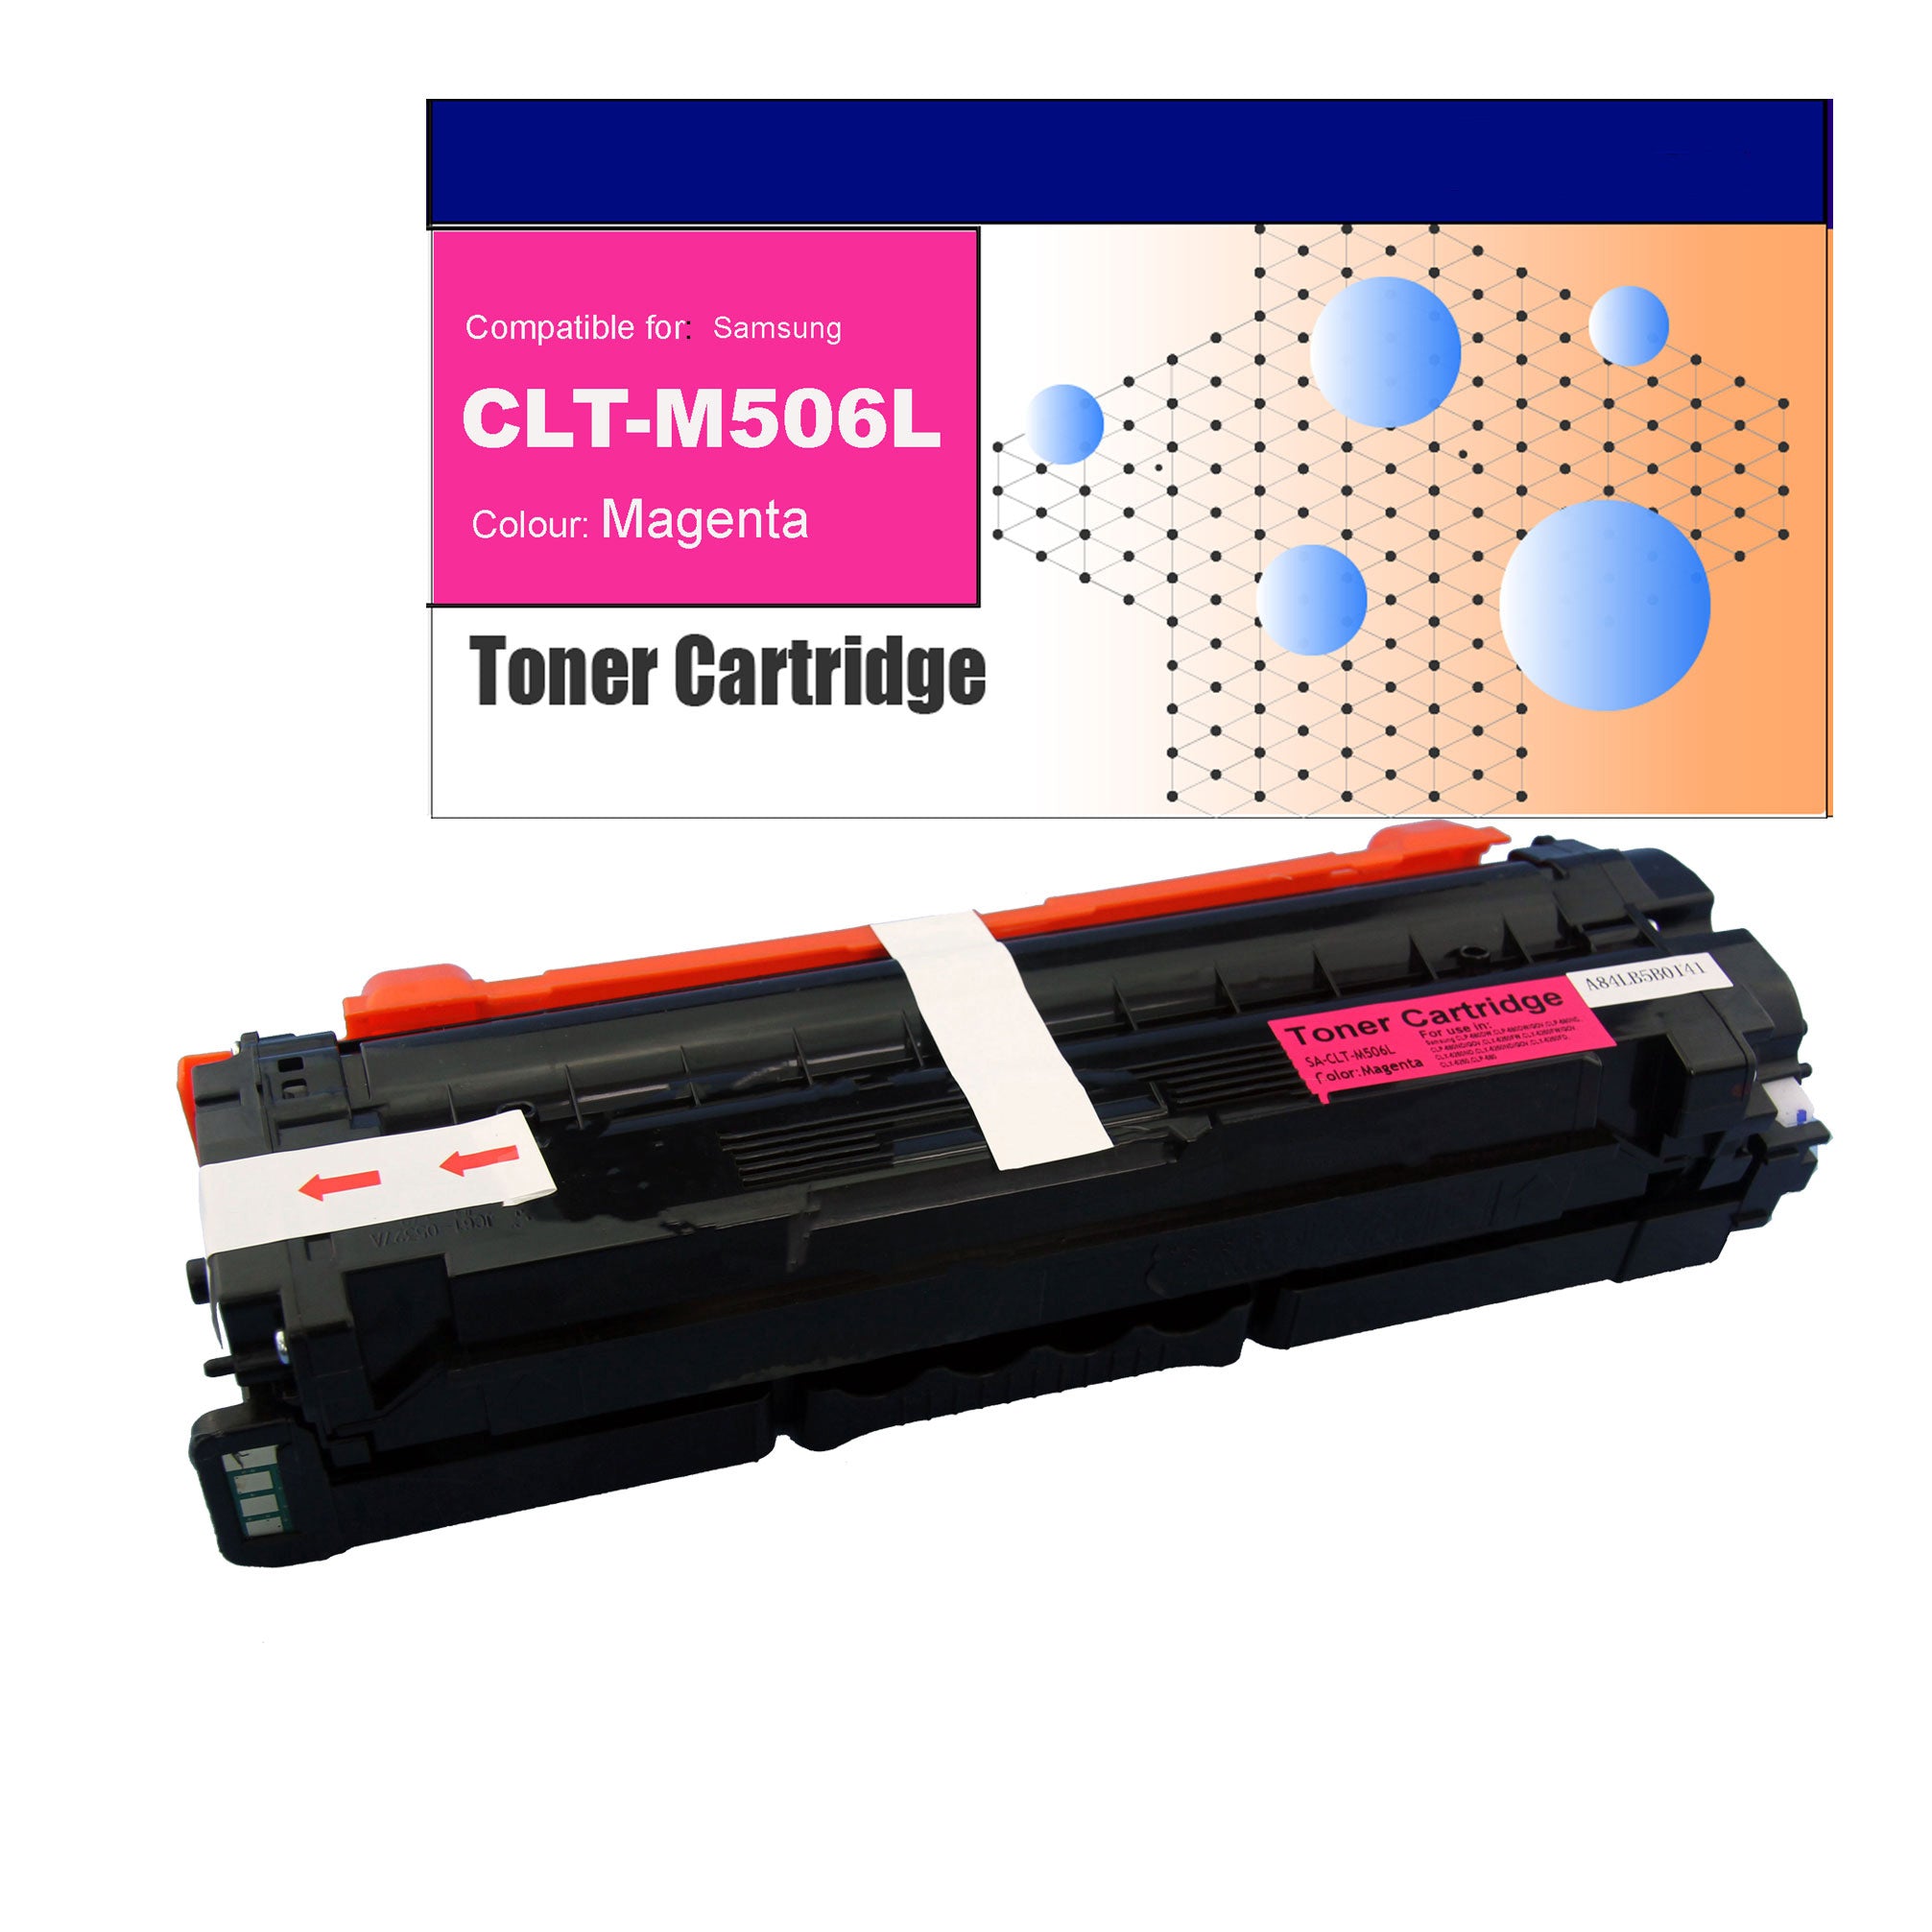 Compatible Toner for Samsung CLT-M506L Magenta Toner Cartridges